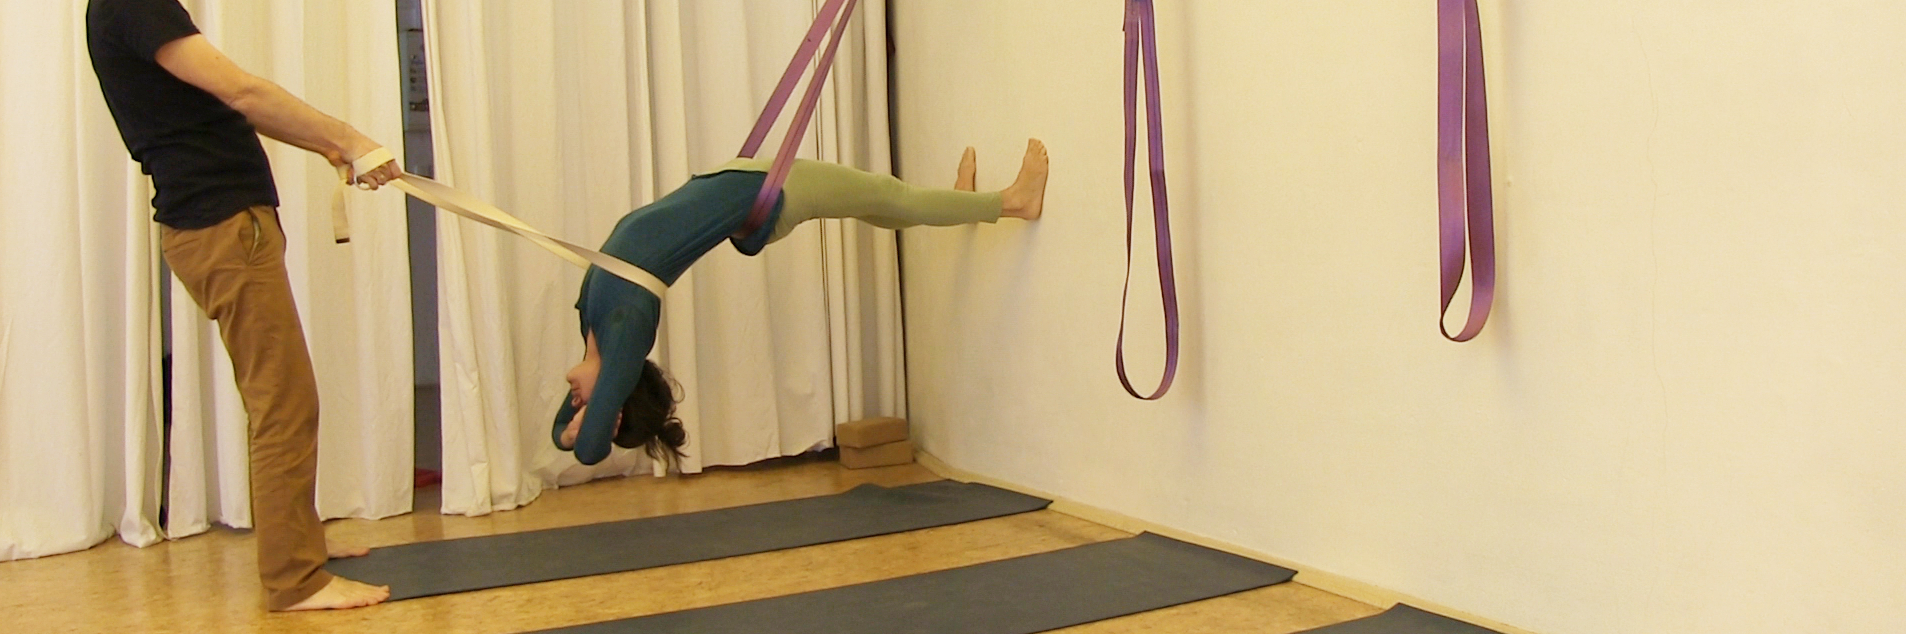 Yoga Übungen im Seil – intensive Rückbeuge im Gurt hängend mit zusätzlichem Gurtzug durch Partner